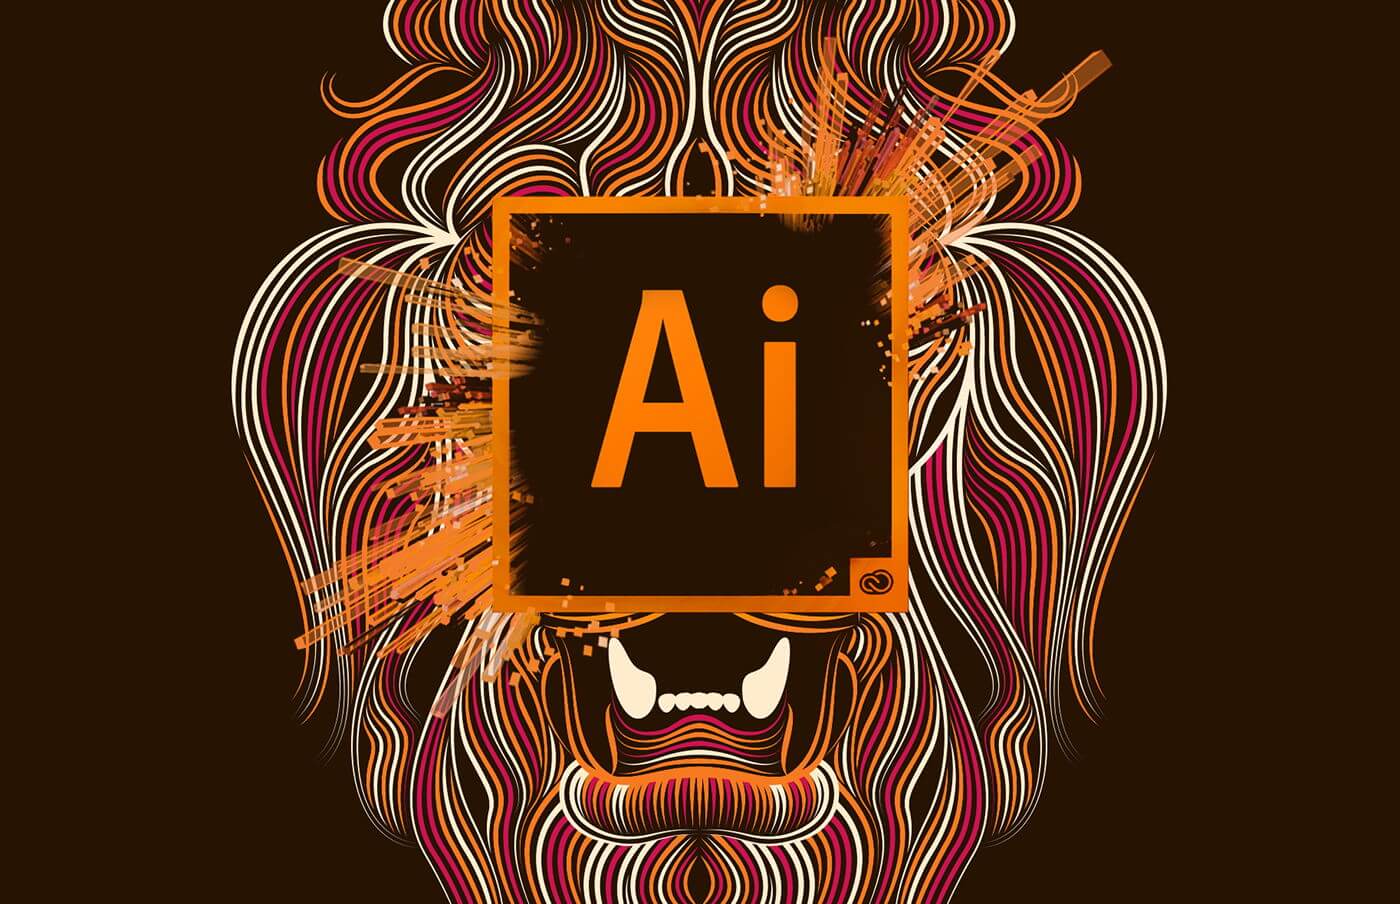 fonts adobe illustrator download